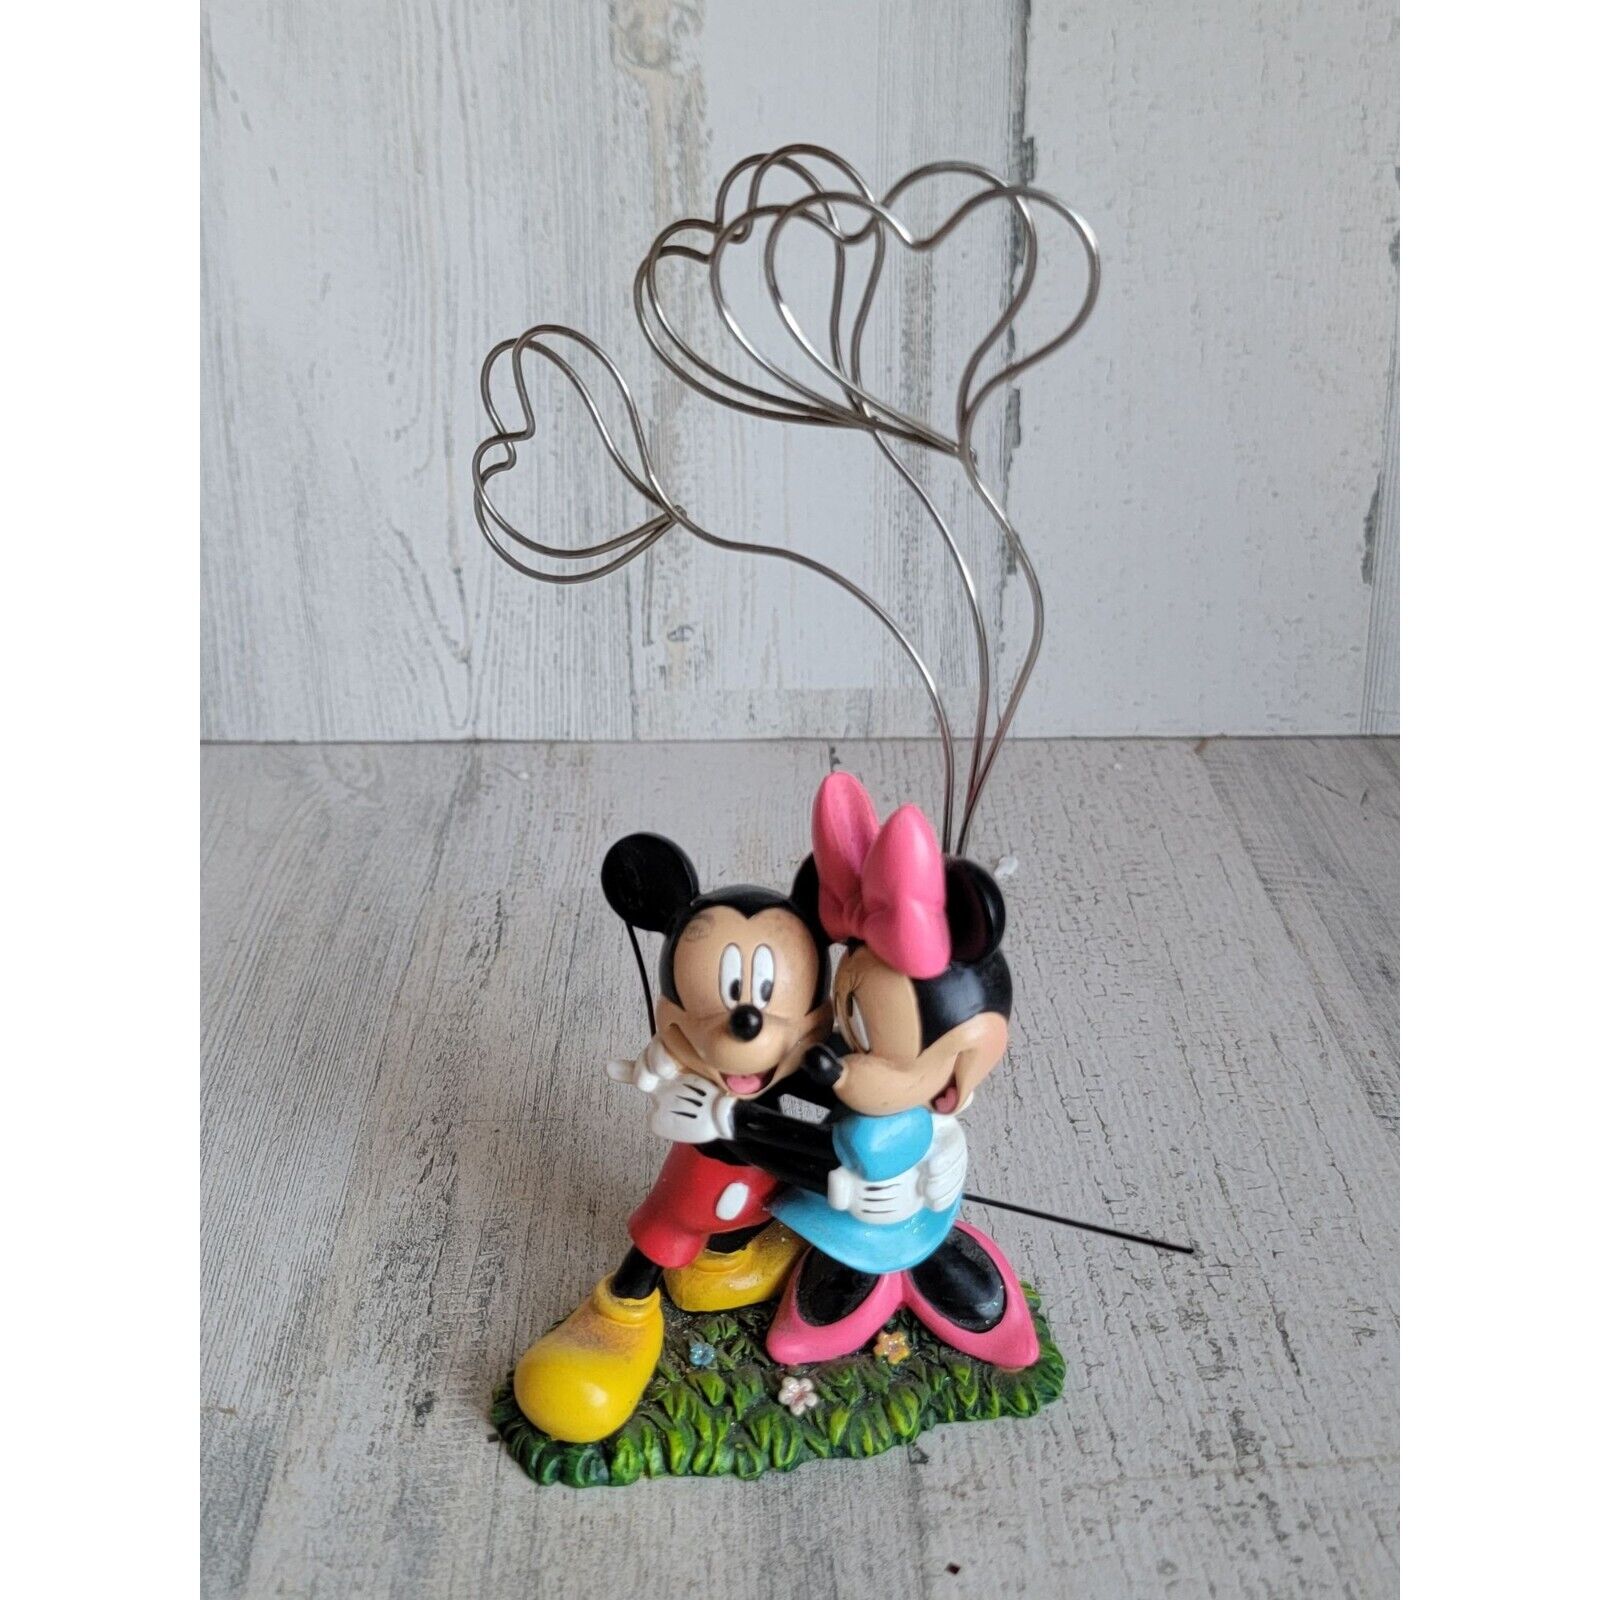 Enesco mini Mickey Mouse Heart photo holder figure